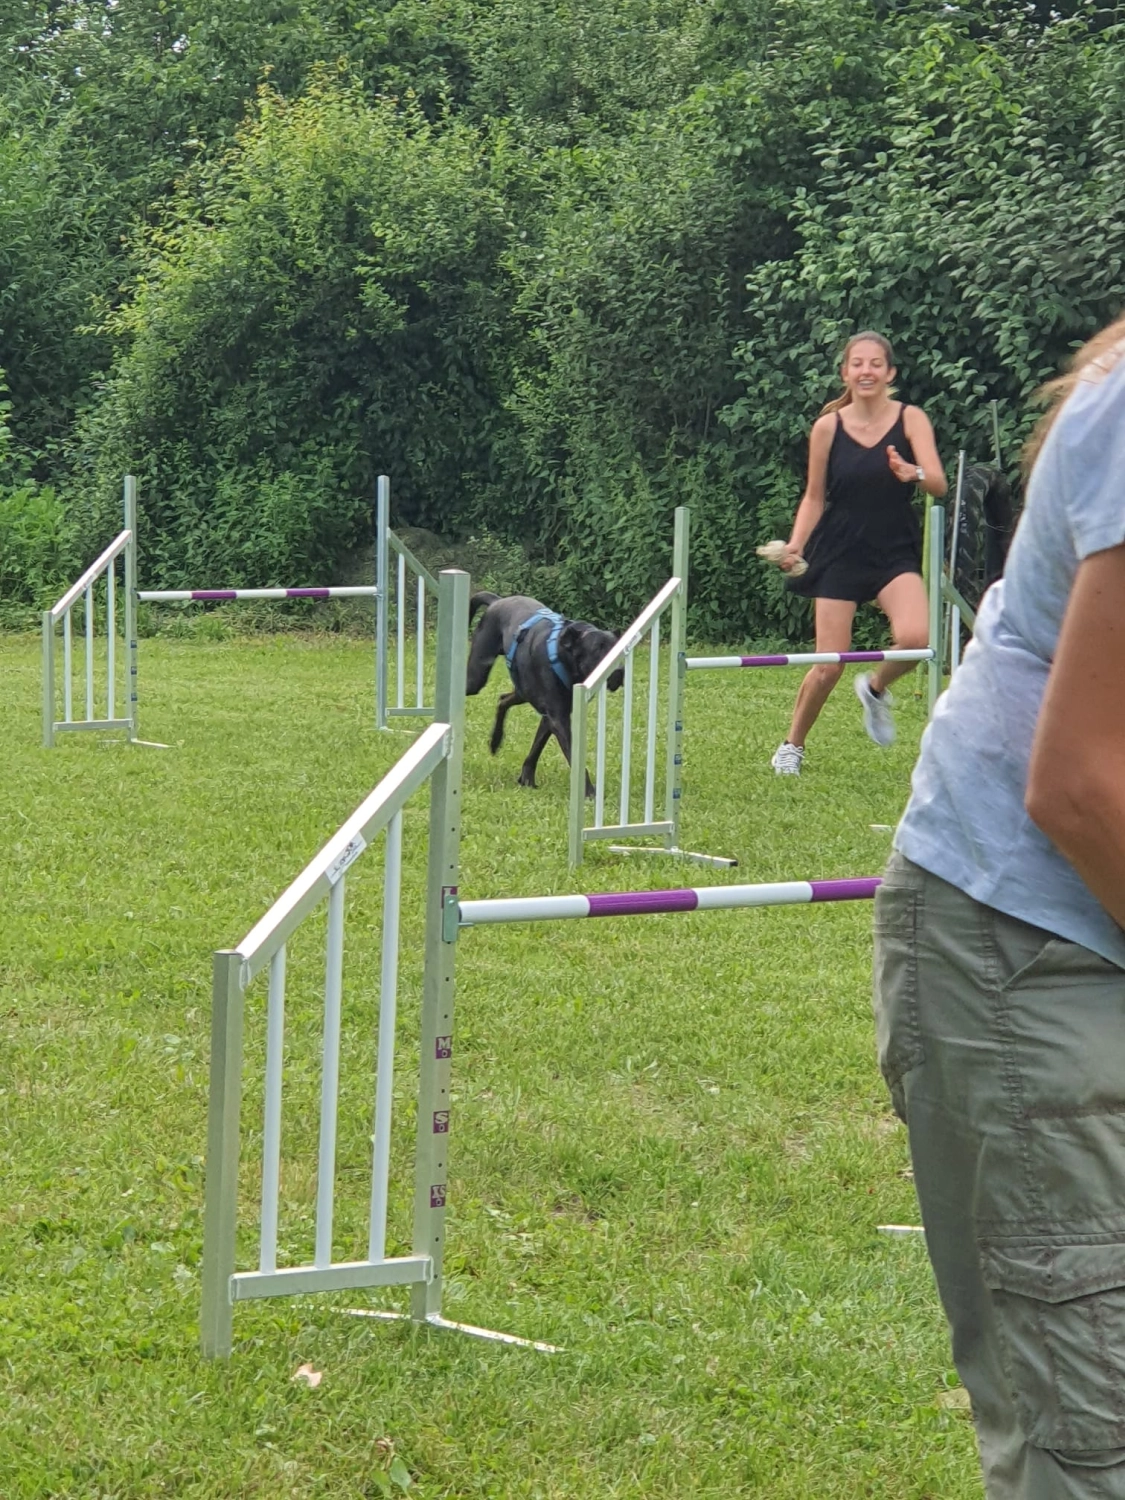 Domino Dogs School , Hundetrainer und Hund im Trainingsgelände